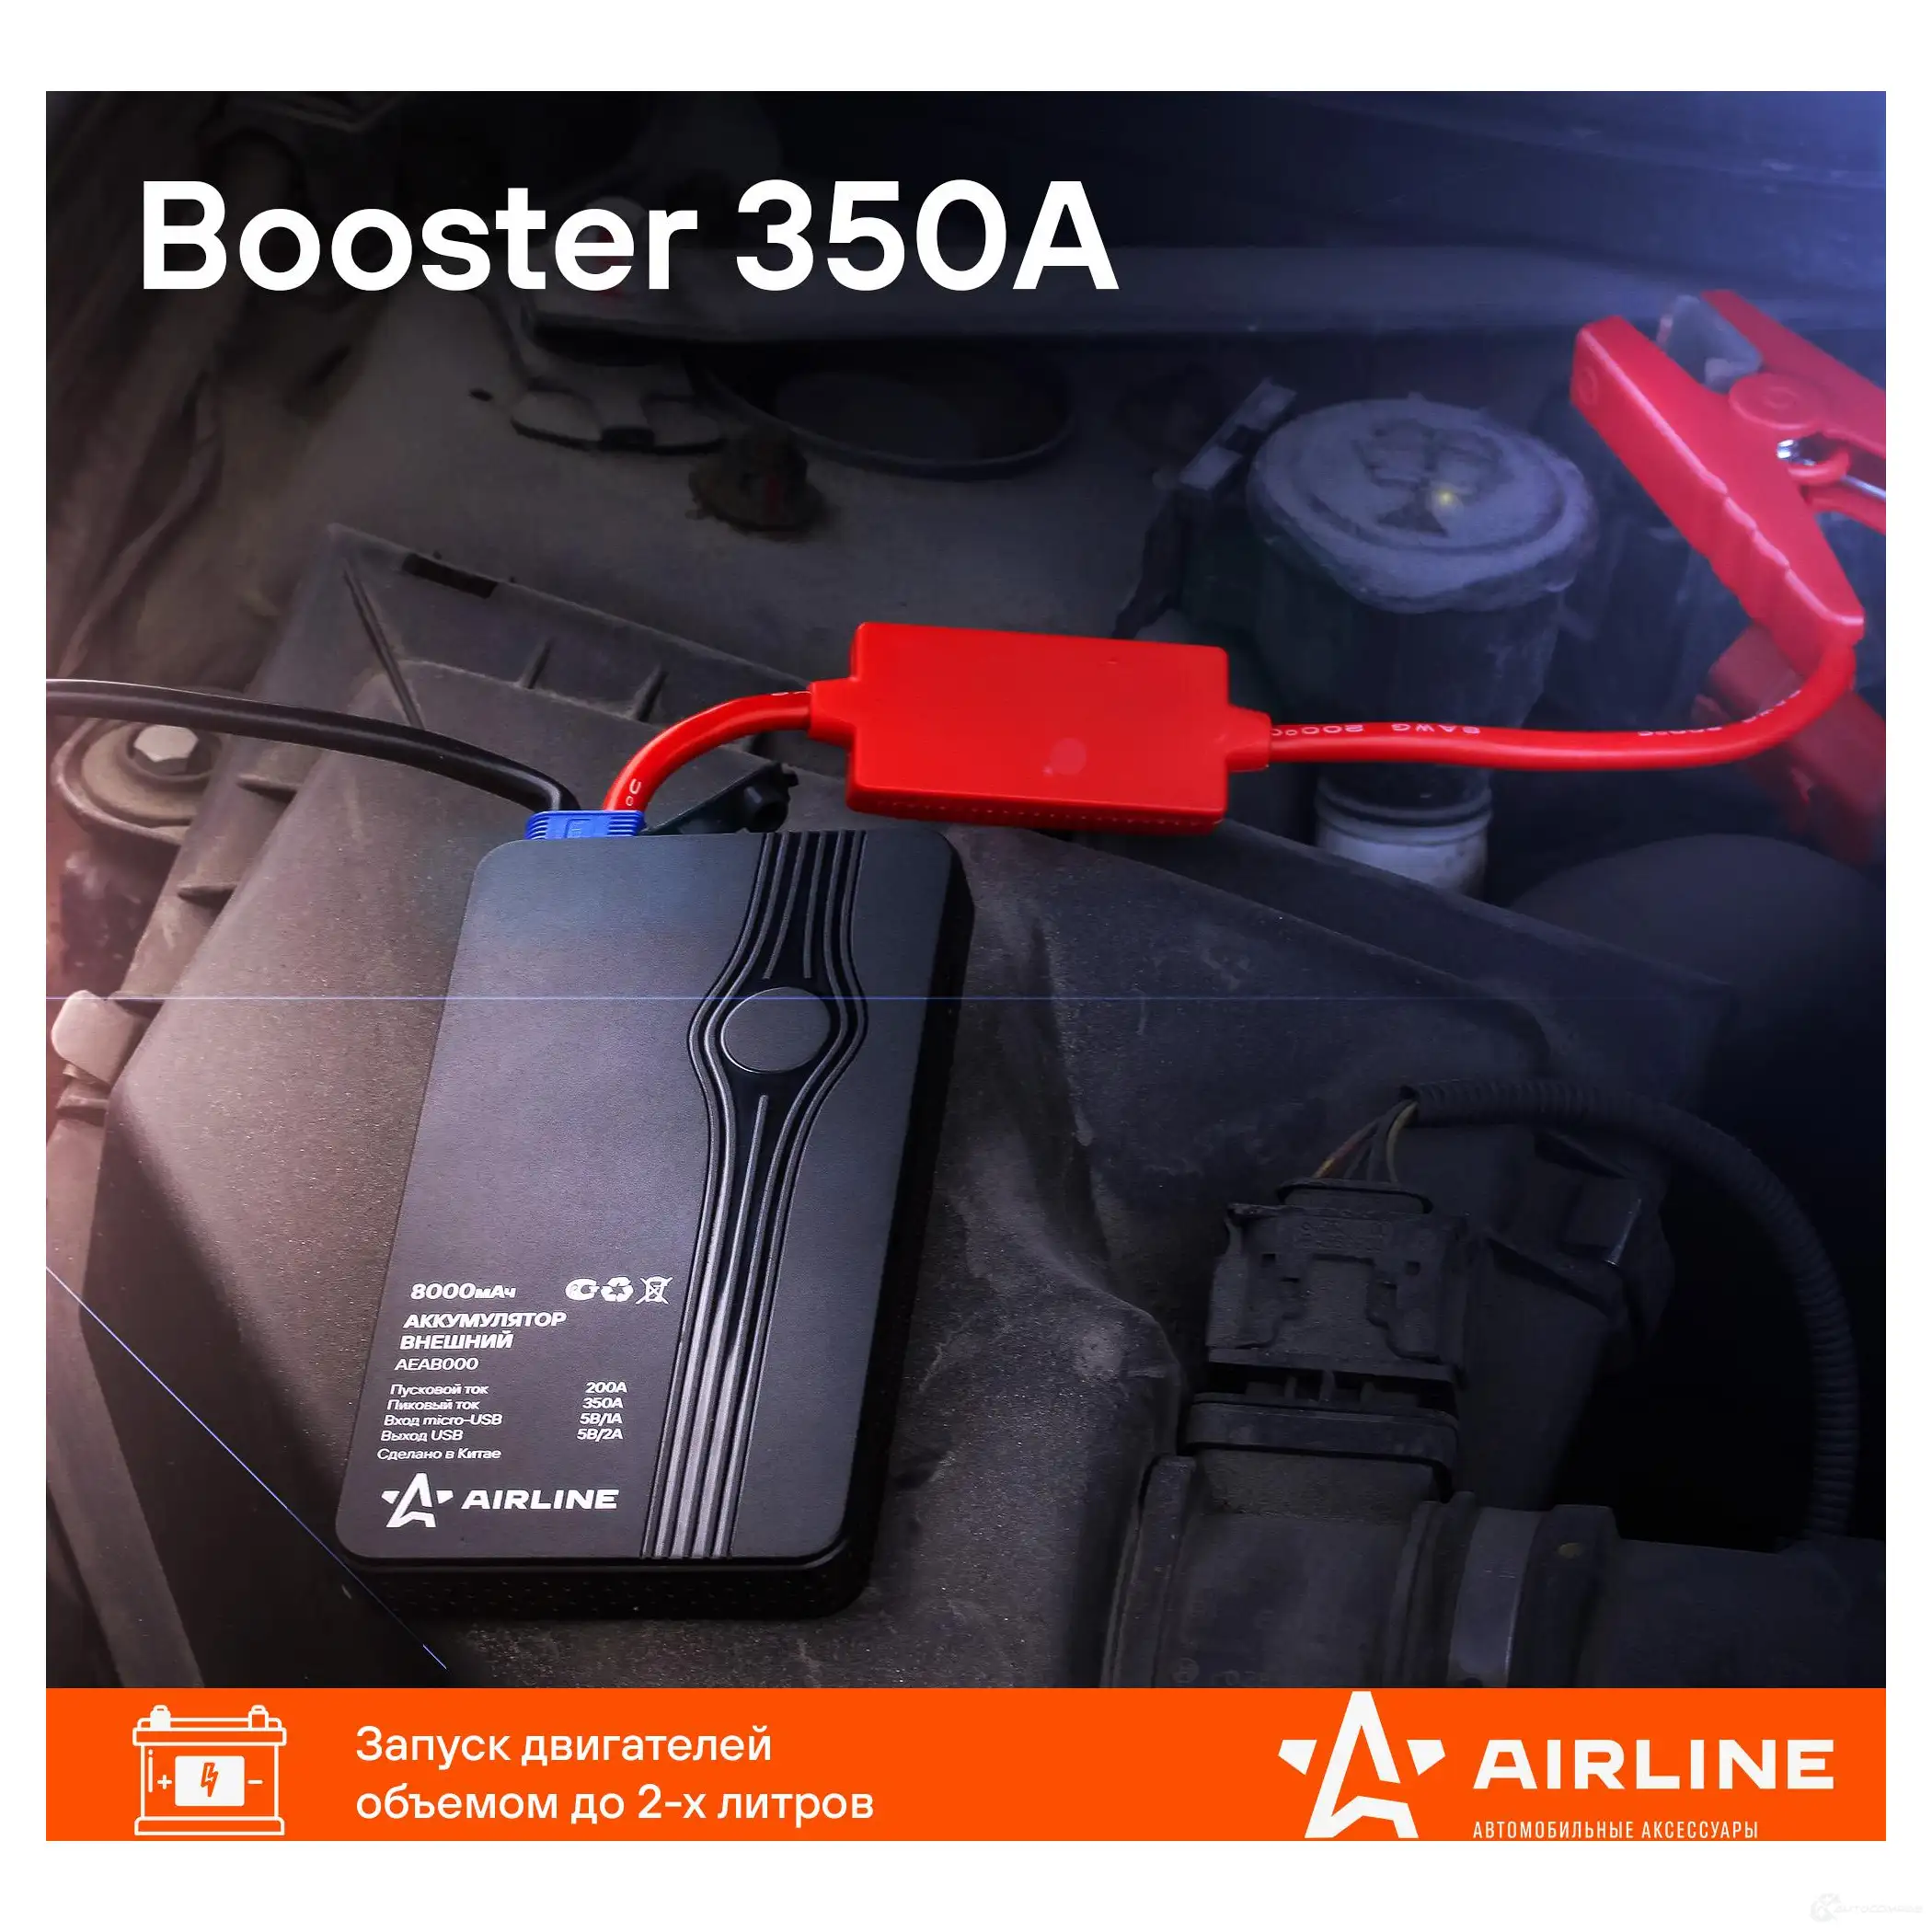 Аккумулятор внешний универсальный (Booster) 8000мАч: USB 5V/2A, пуск ДВС 350А, фонарь AIRLINE 5C5UB I aeab000 1438172714 изображение 1